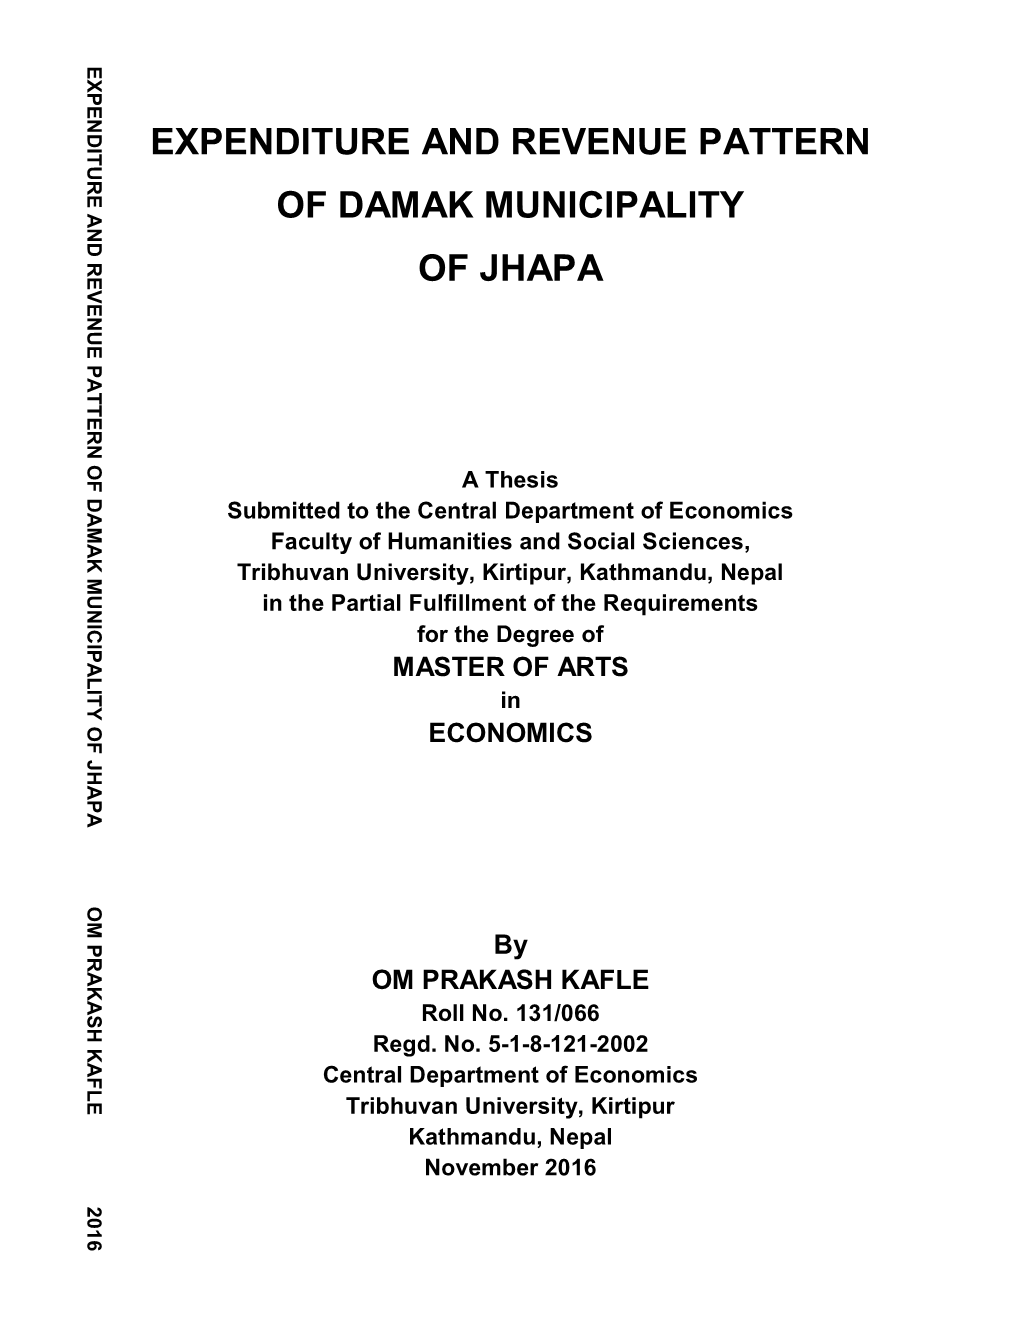 Expenditure and Revenue Pattern of Damak Municipality of Jhapa